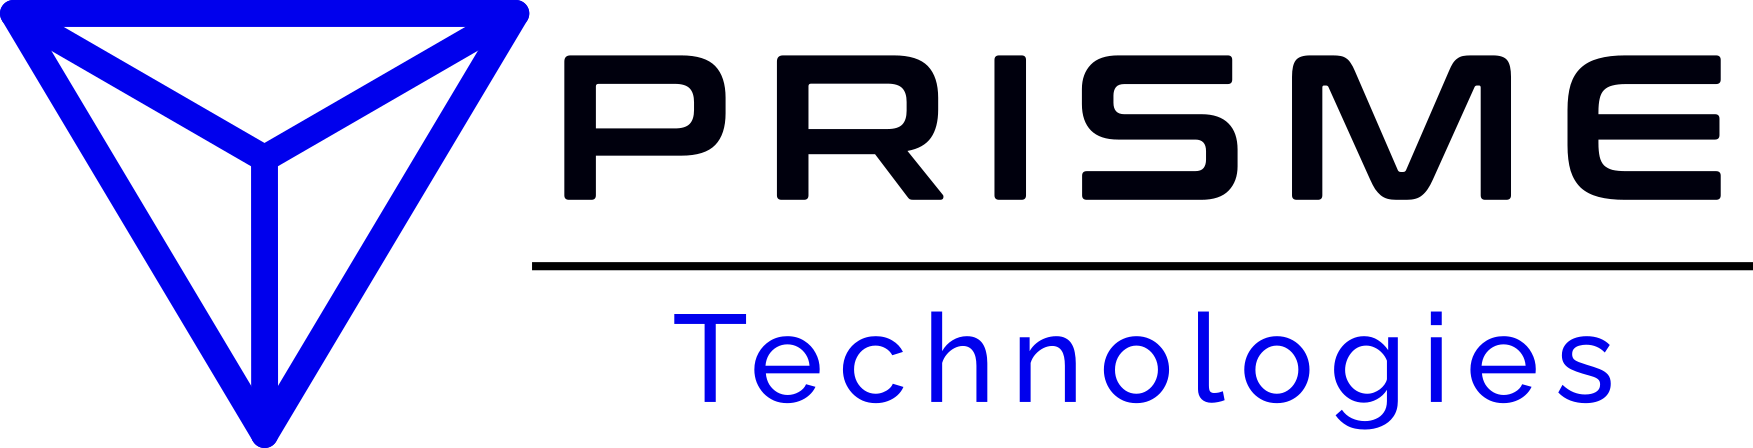 Prisme Technologies